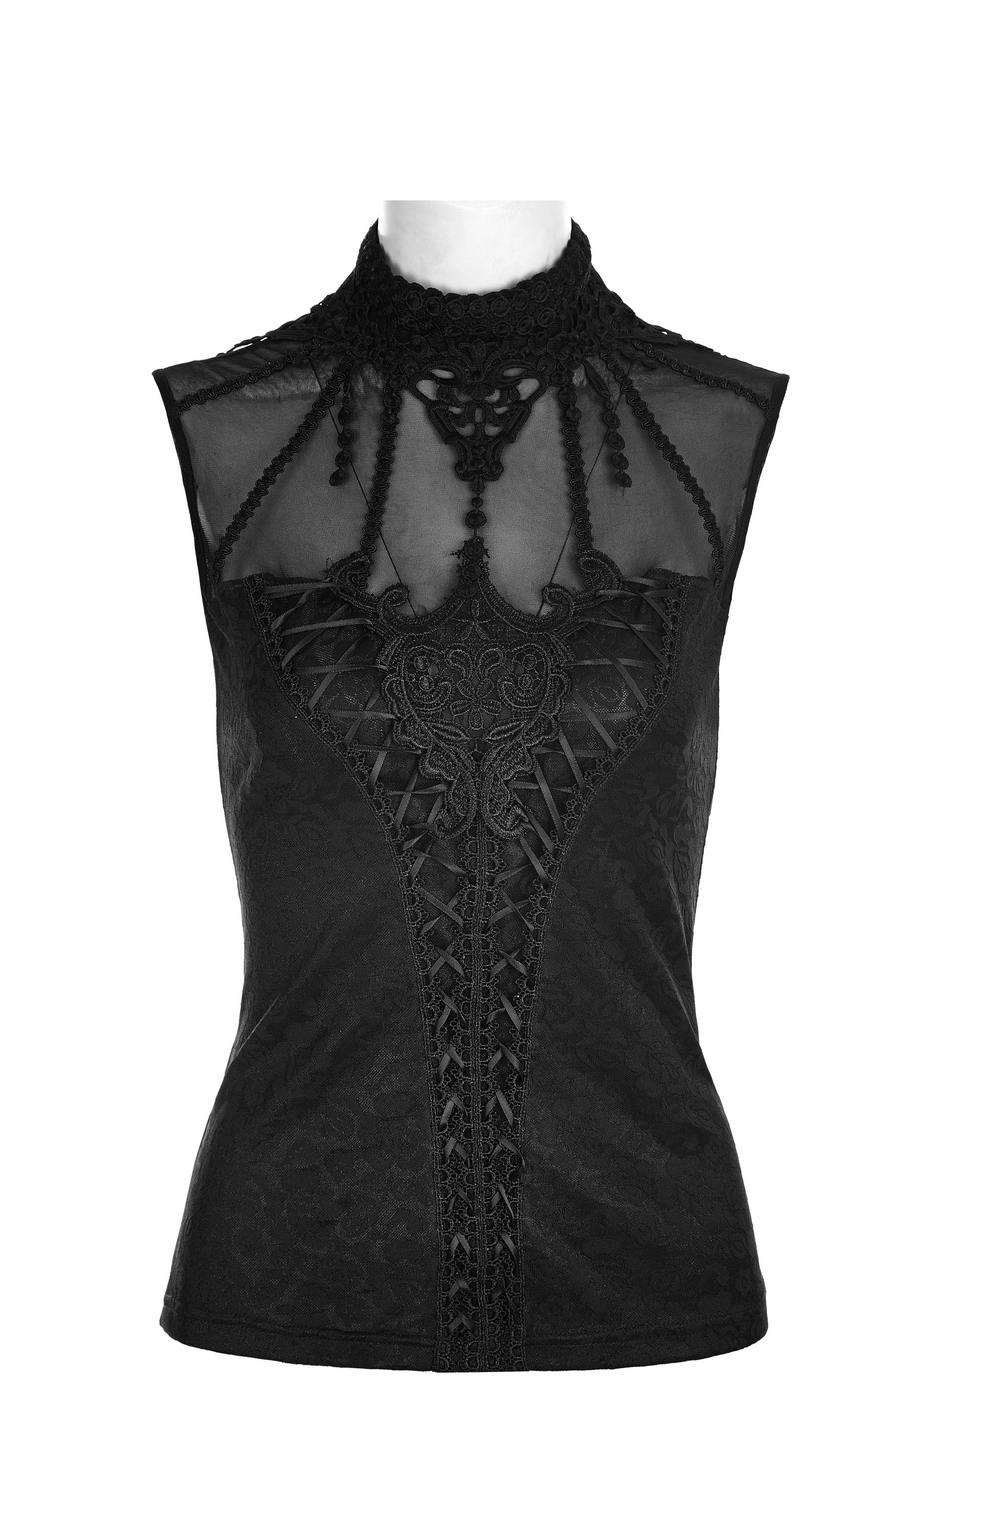 Elegant Gothic-Style Black Fringed Lace Tank Top